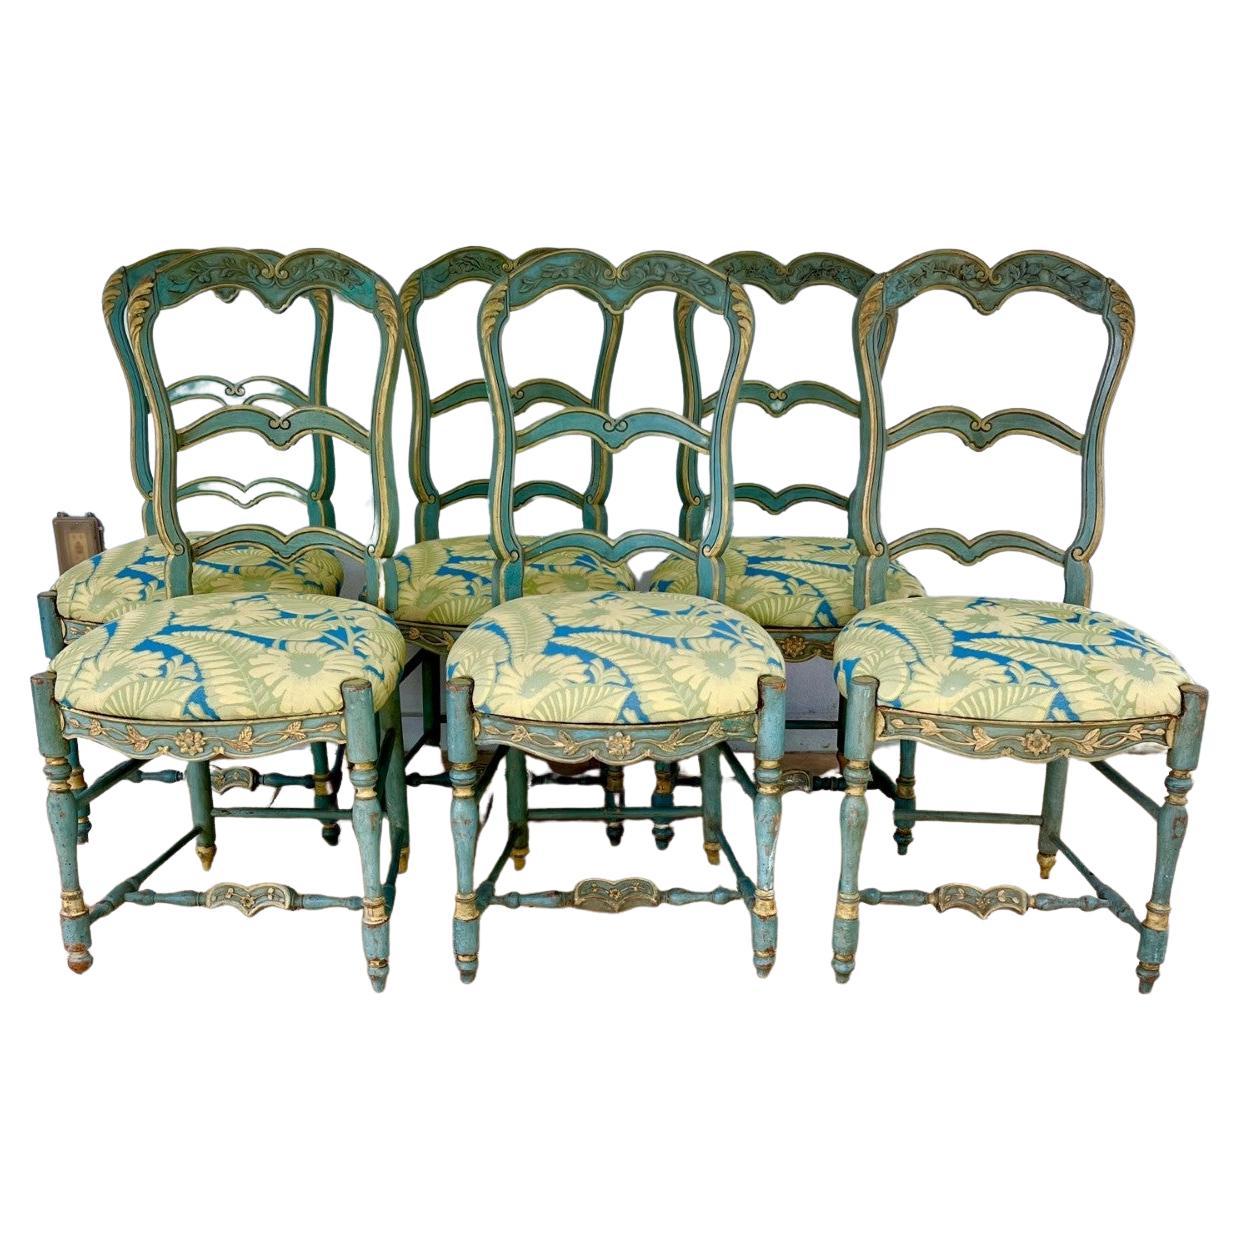 Six chaises de salle à manger peintes au début du 19e siècle.

Superbe ensemble de 6 chaises de salle à manger de style baroque Louis XV en bois fruitier sculpté. La traverse supérieure présente un motif floral finement sculpté que l'on retrouve